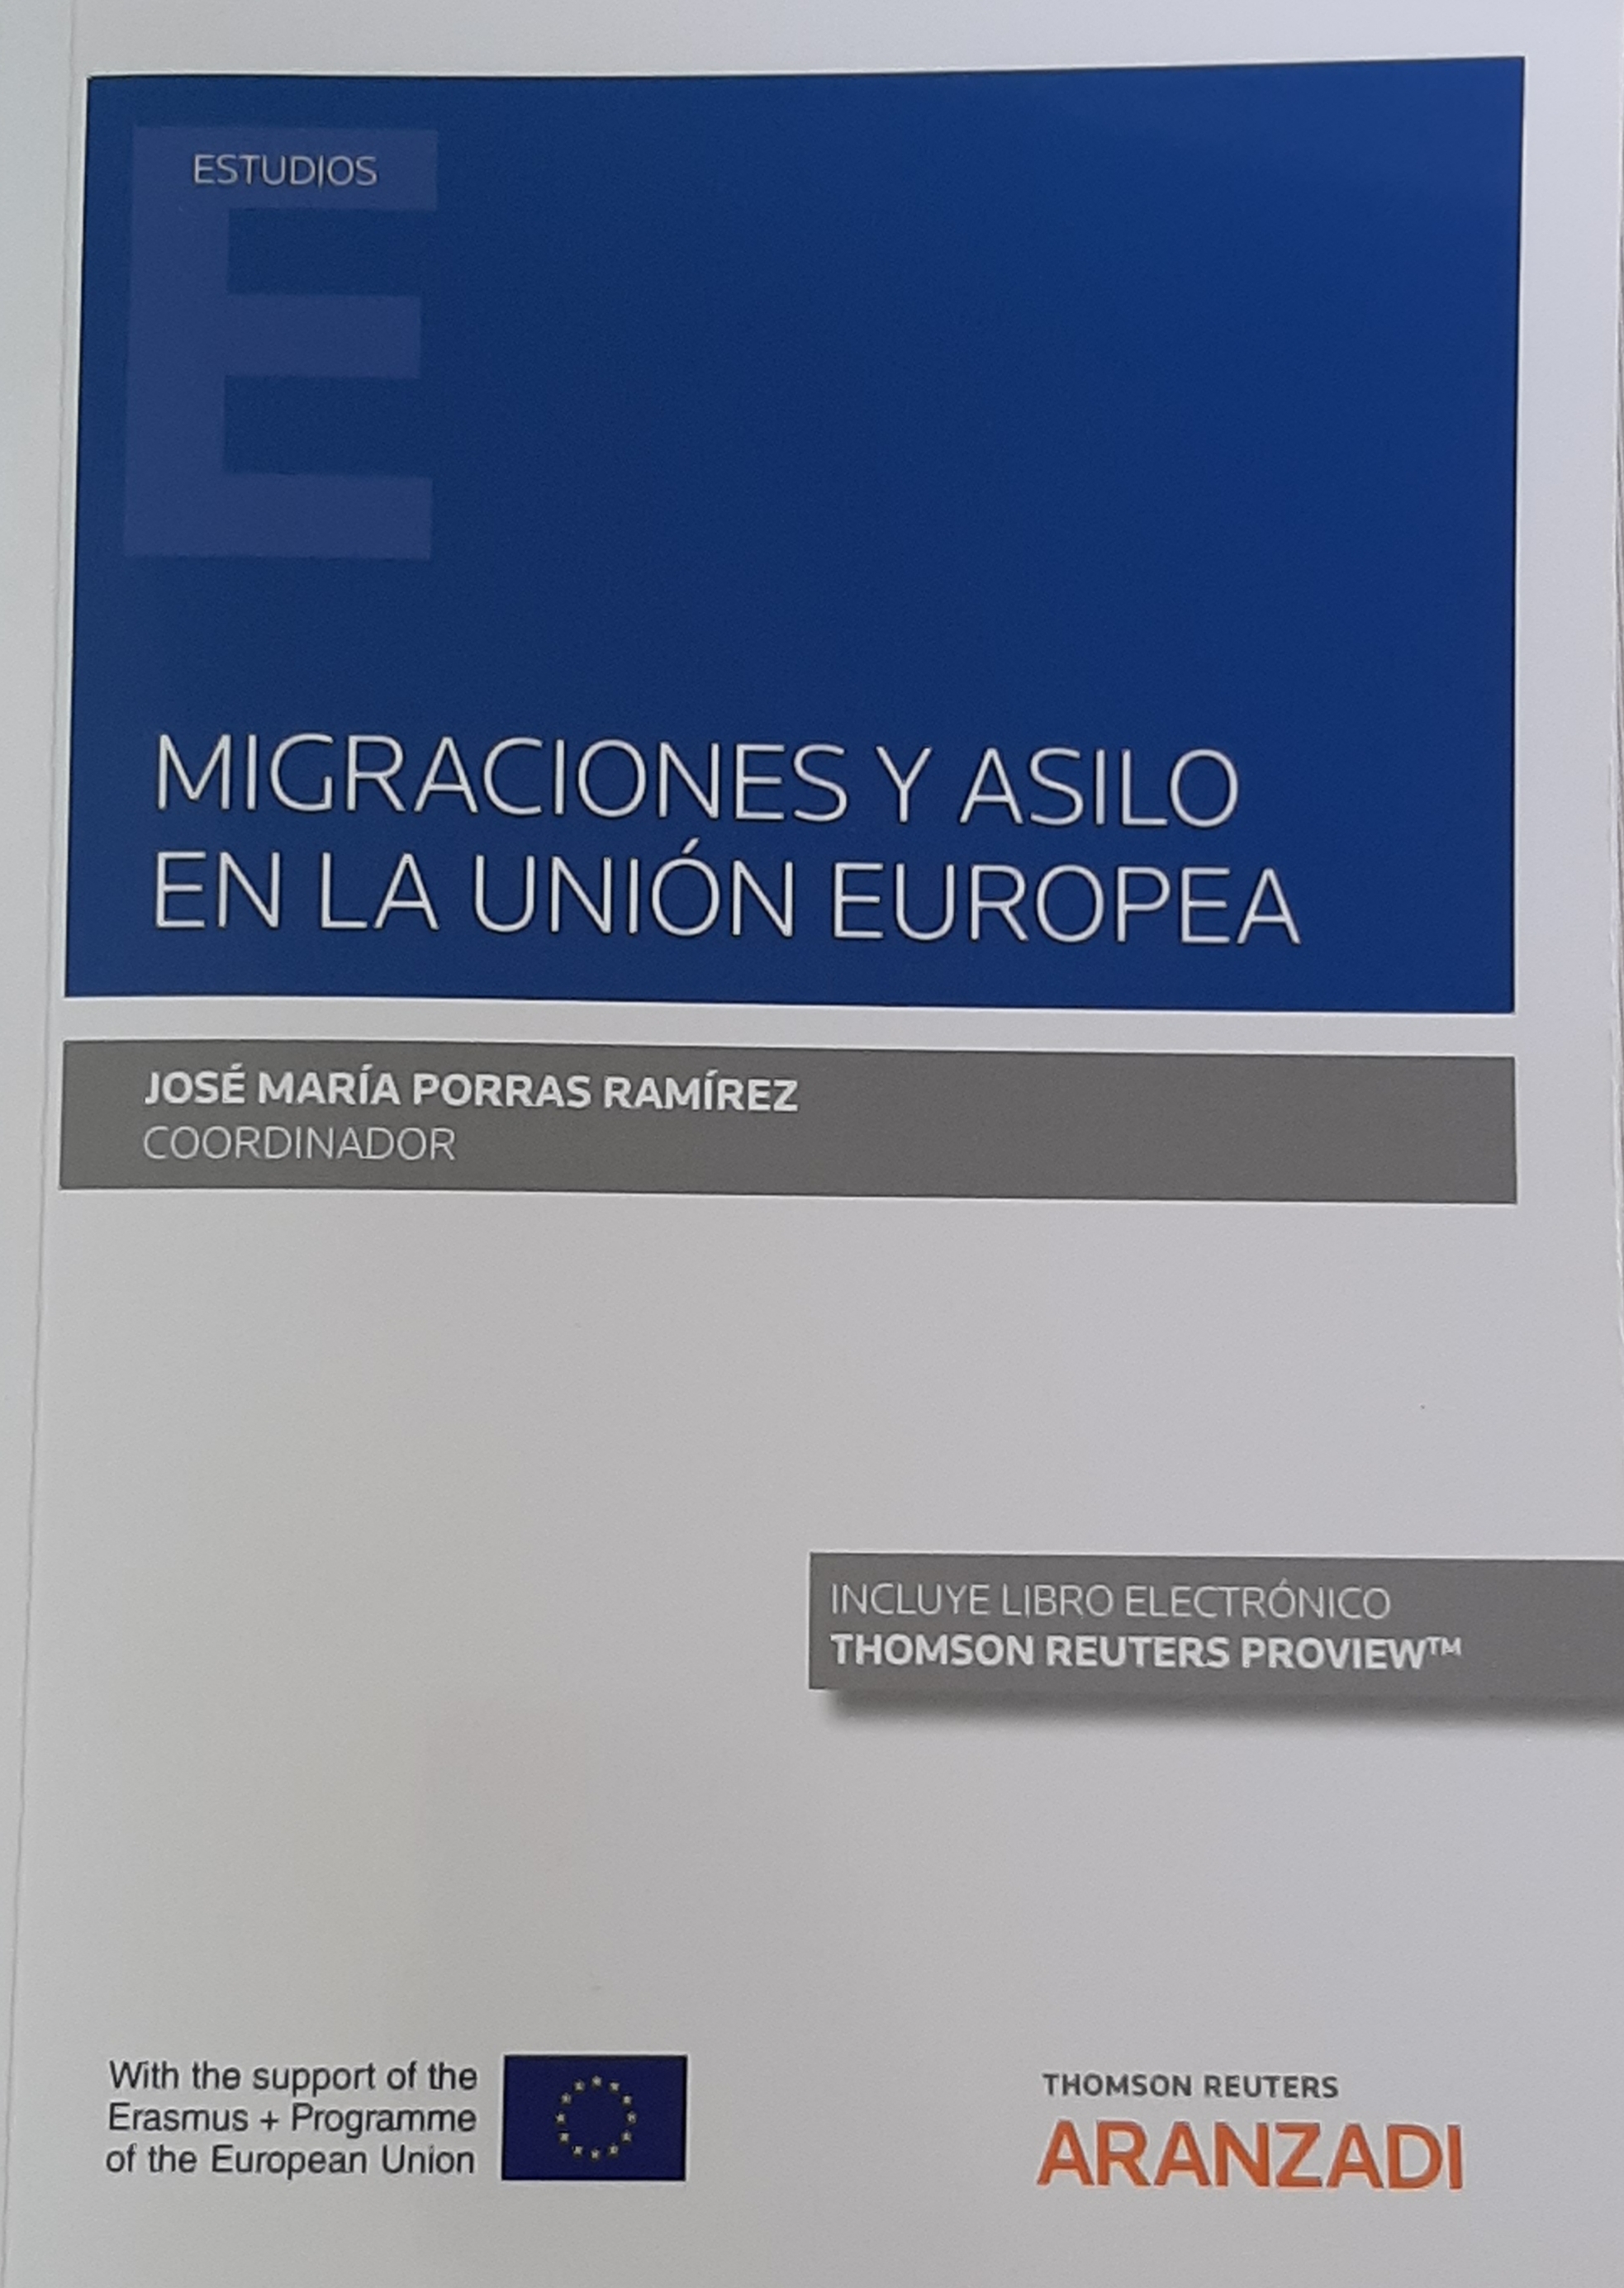 Imagen de la portada del libro "MIGRACIONES Y ASILO EN LA UNIÓN EUROPEA"